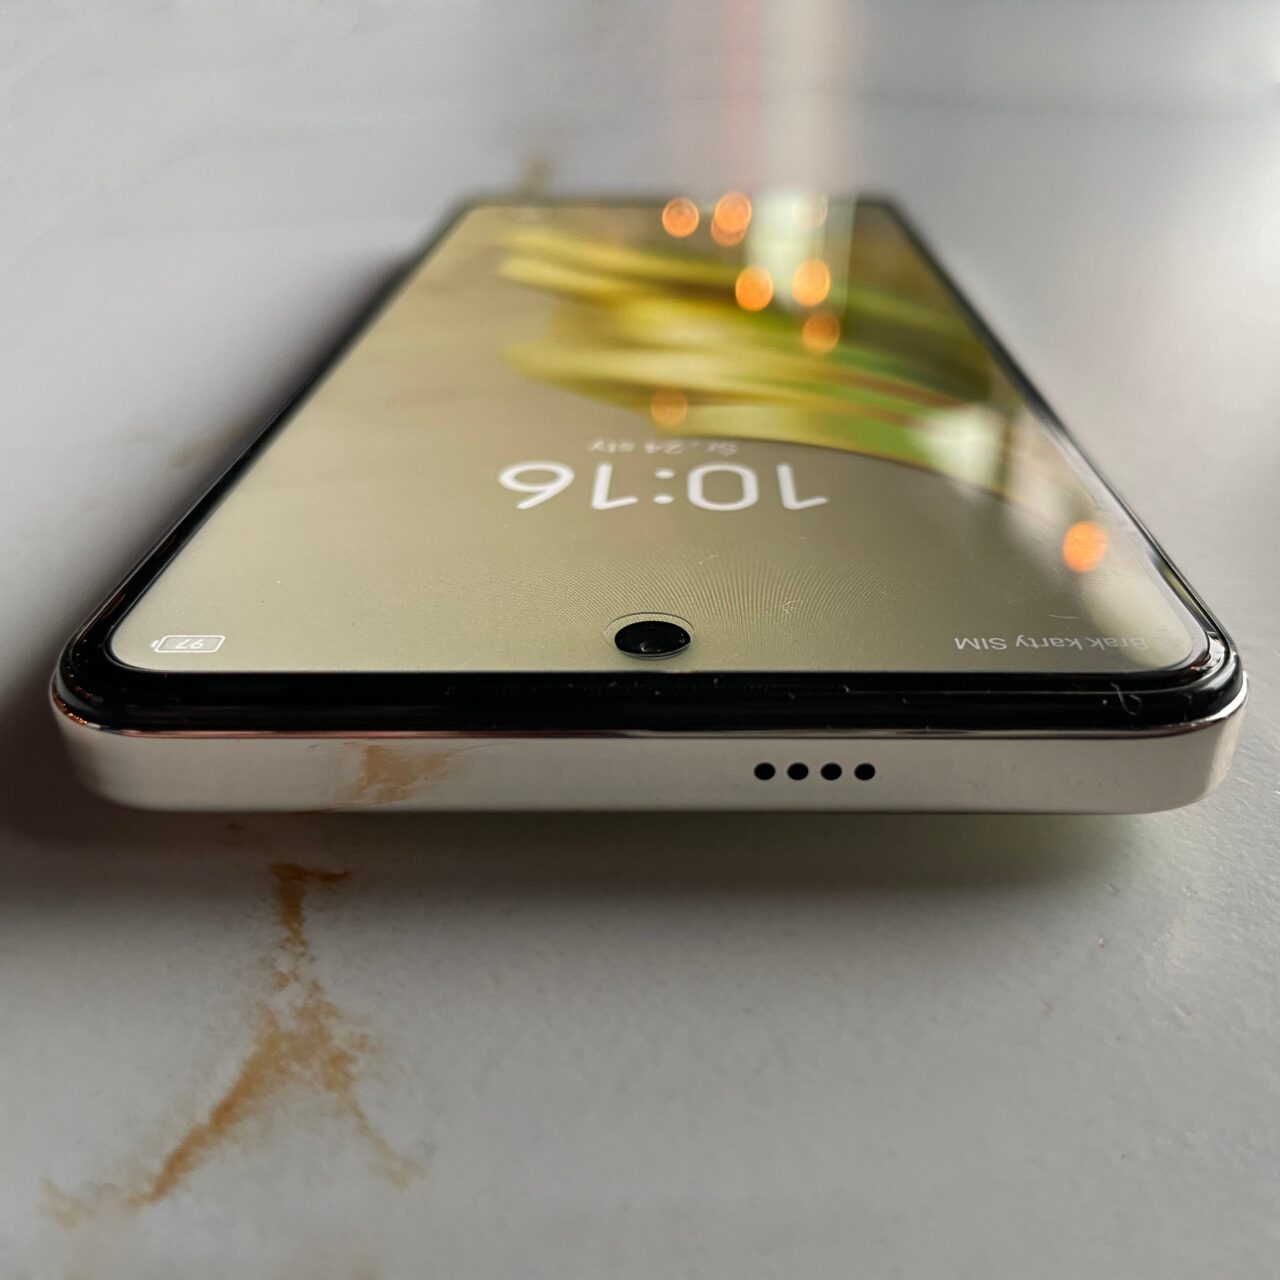 Częściowy widok czarnego smartfona tecno spark 20 pro leżącego na płaskiej powierzchni, z zarysowanymi rogami i widocznym czasem 9:01 na ekranie blokady.